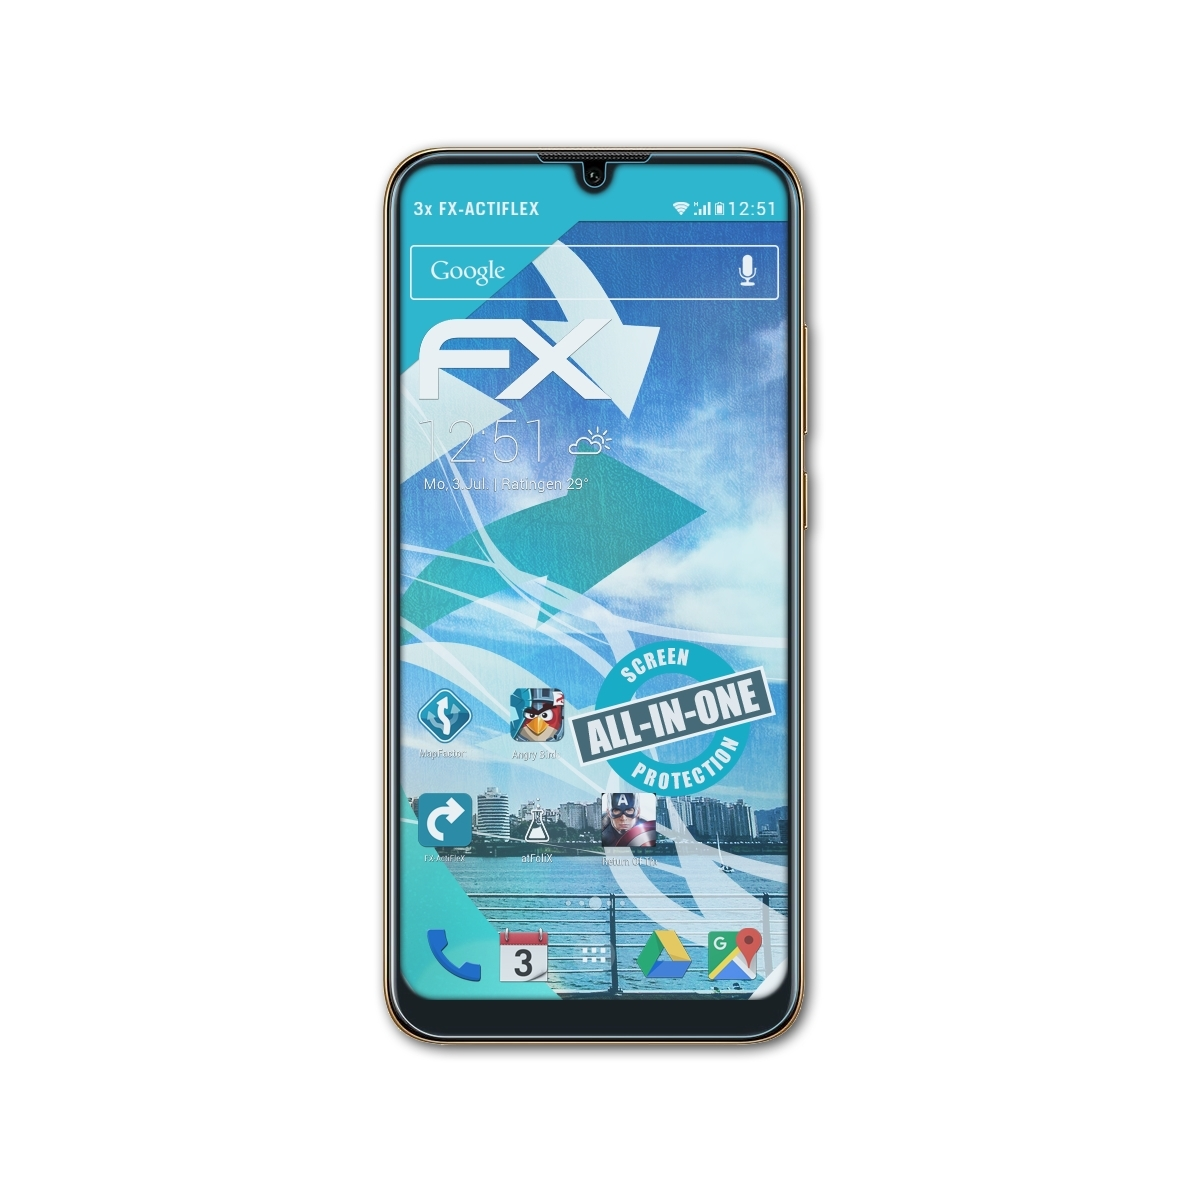 ATFOLIX 3x 2019) Y6 Huawei Displayschutz(für FX-ActiFleX Pro